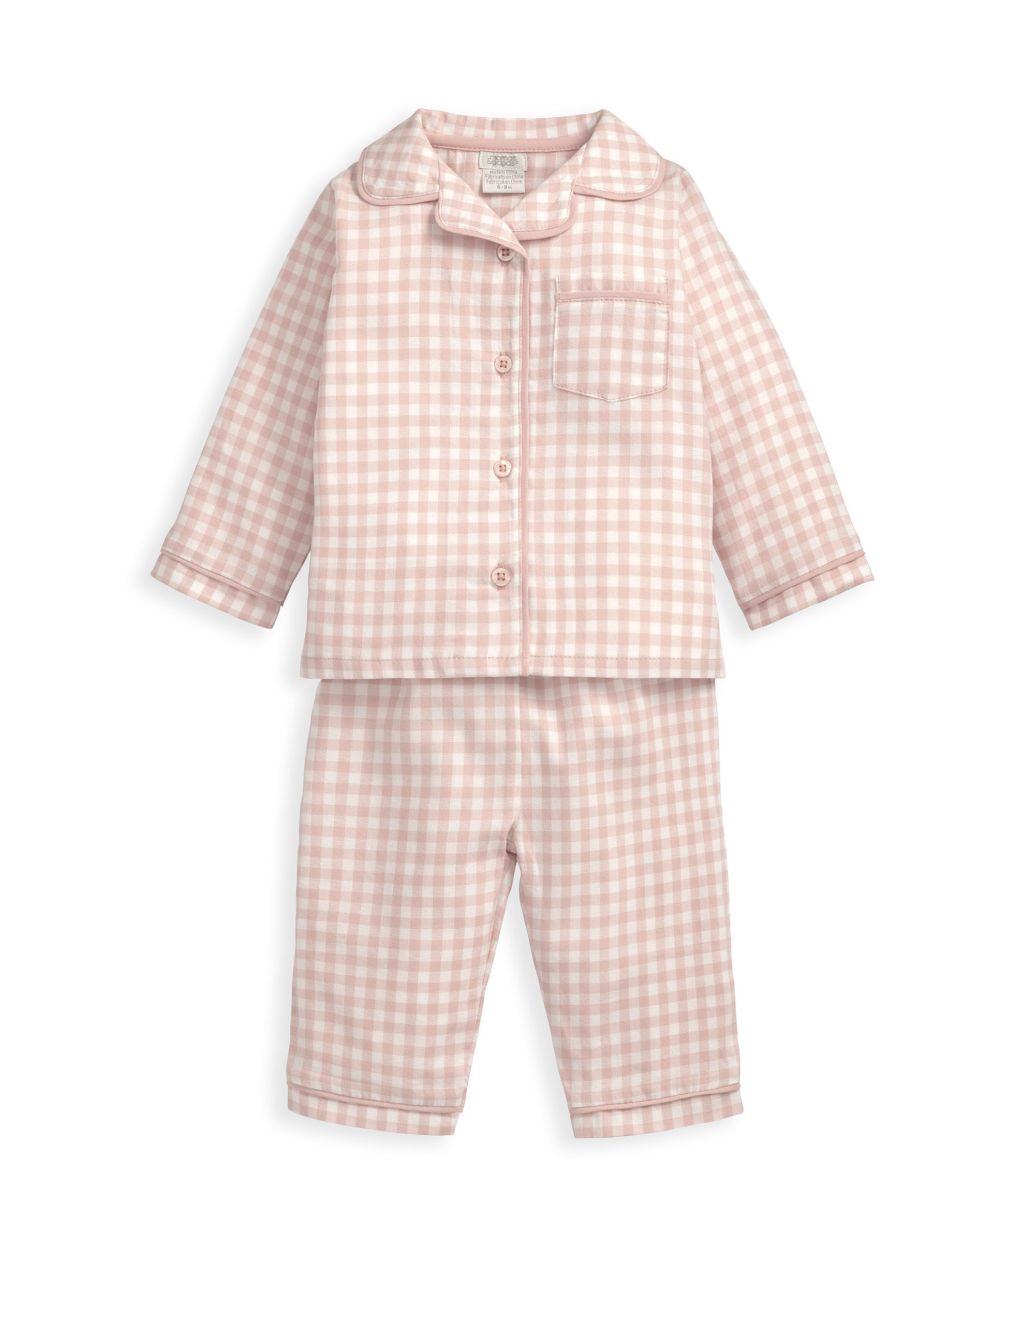 Pink Check Woven Pyjamas (6 Mths-3 yrs)